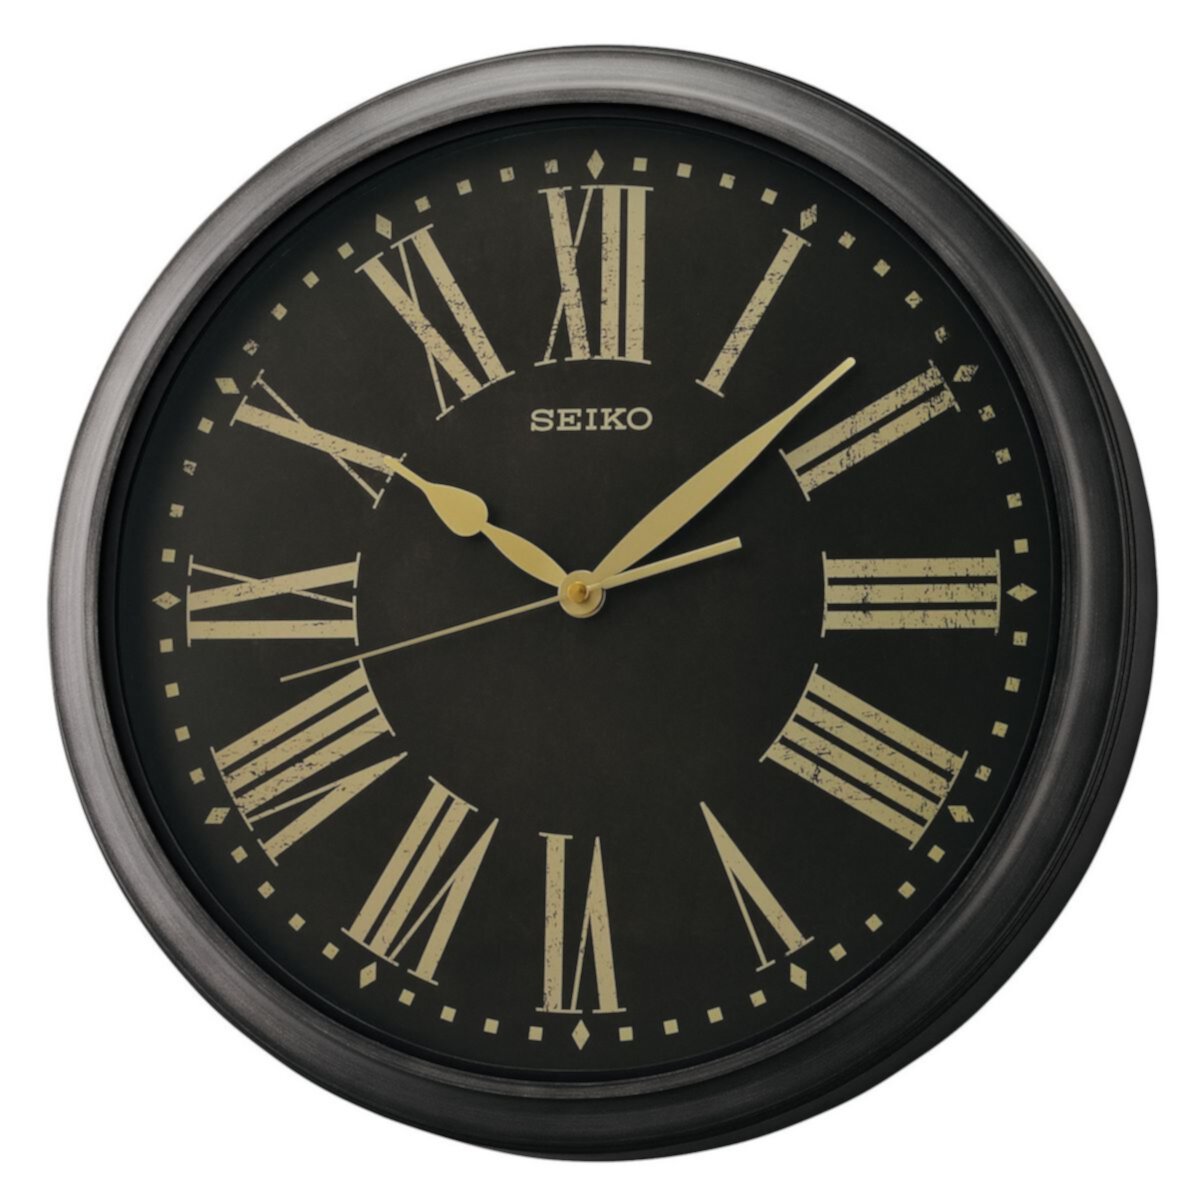 Брызгозащищенные настенные часы Seiko для использования внутри и снаружи помещений Seiko